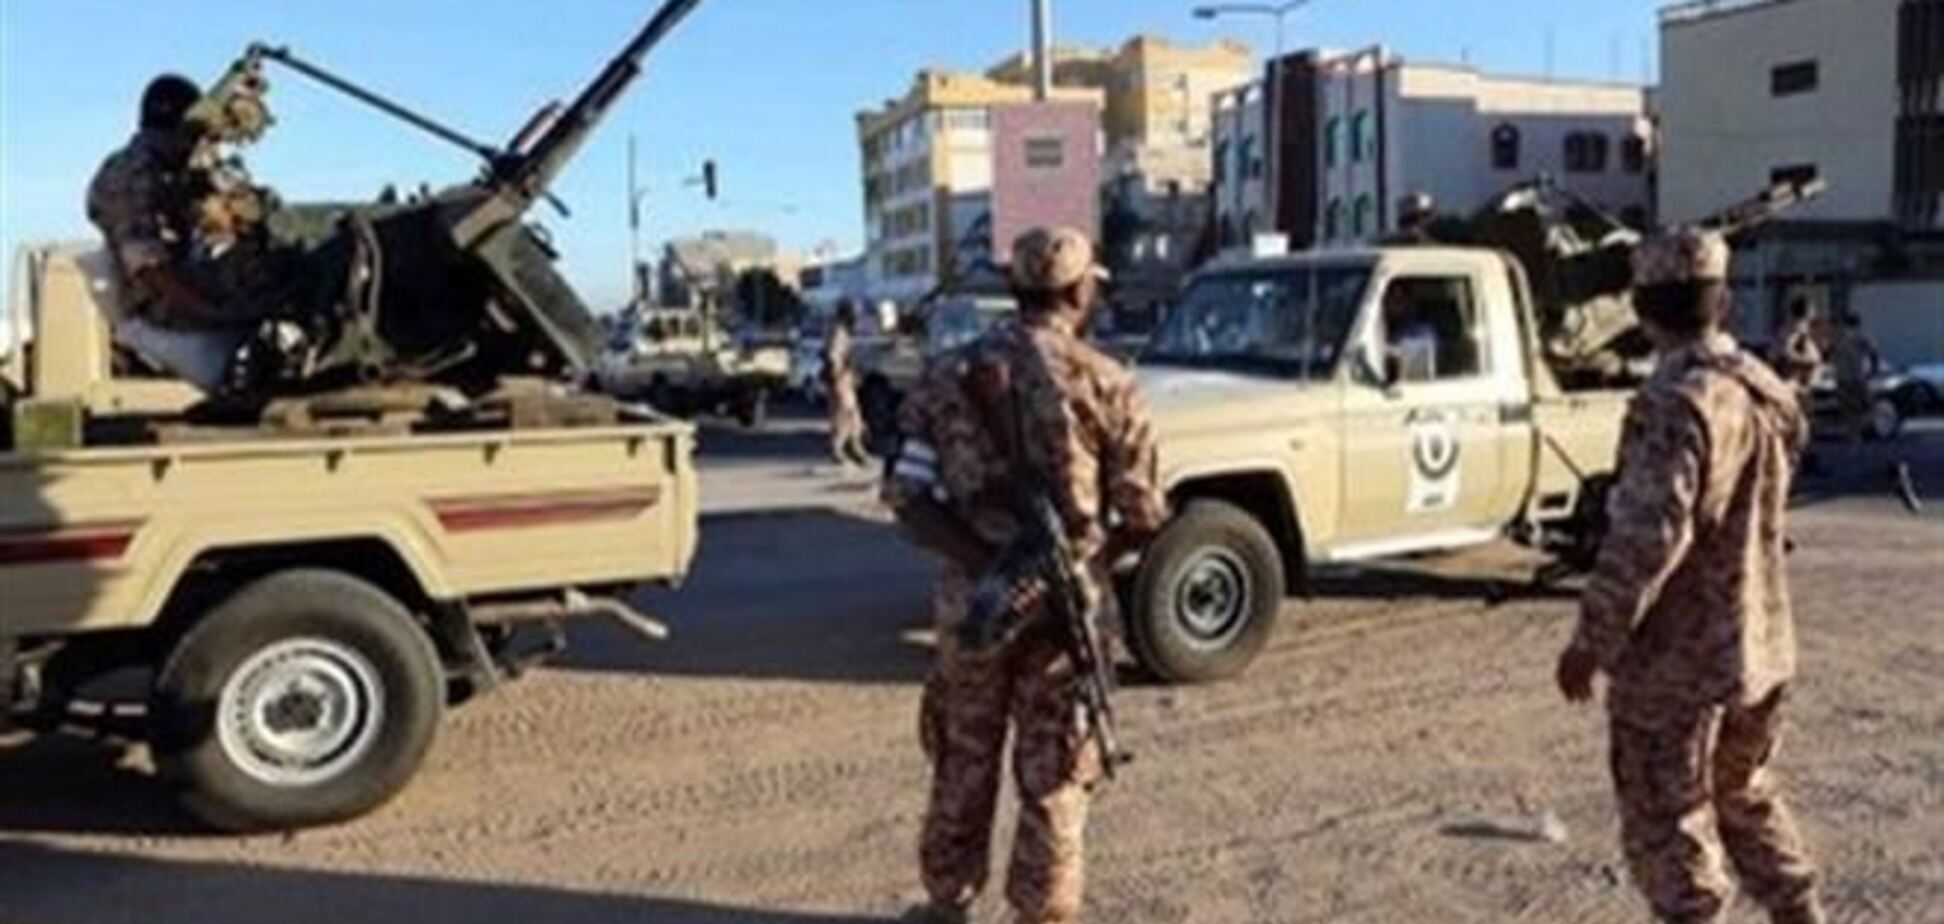 Штаты подтвердили причастность к спецоперациям в Сомали и Ливии